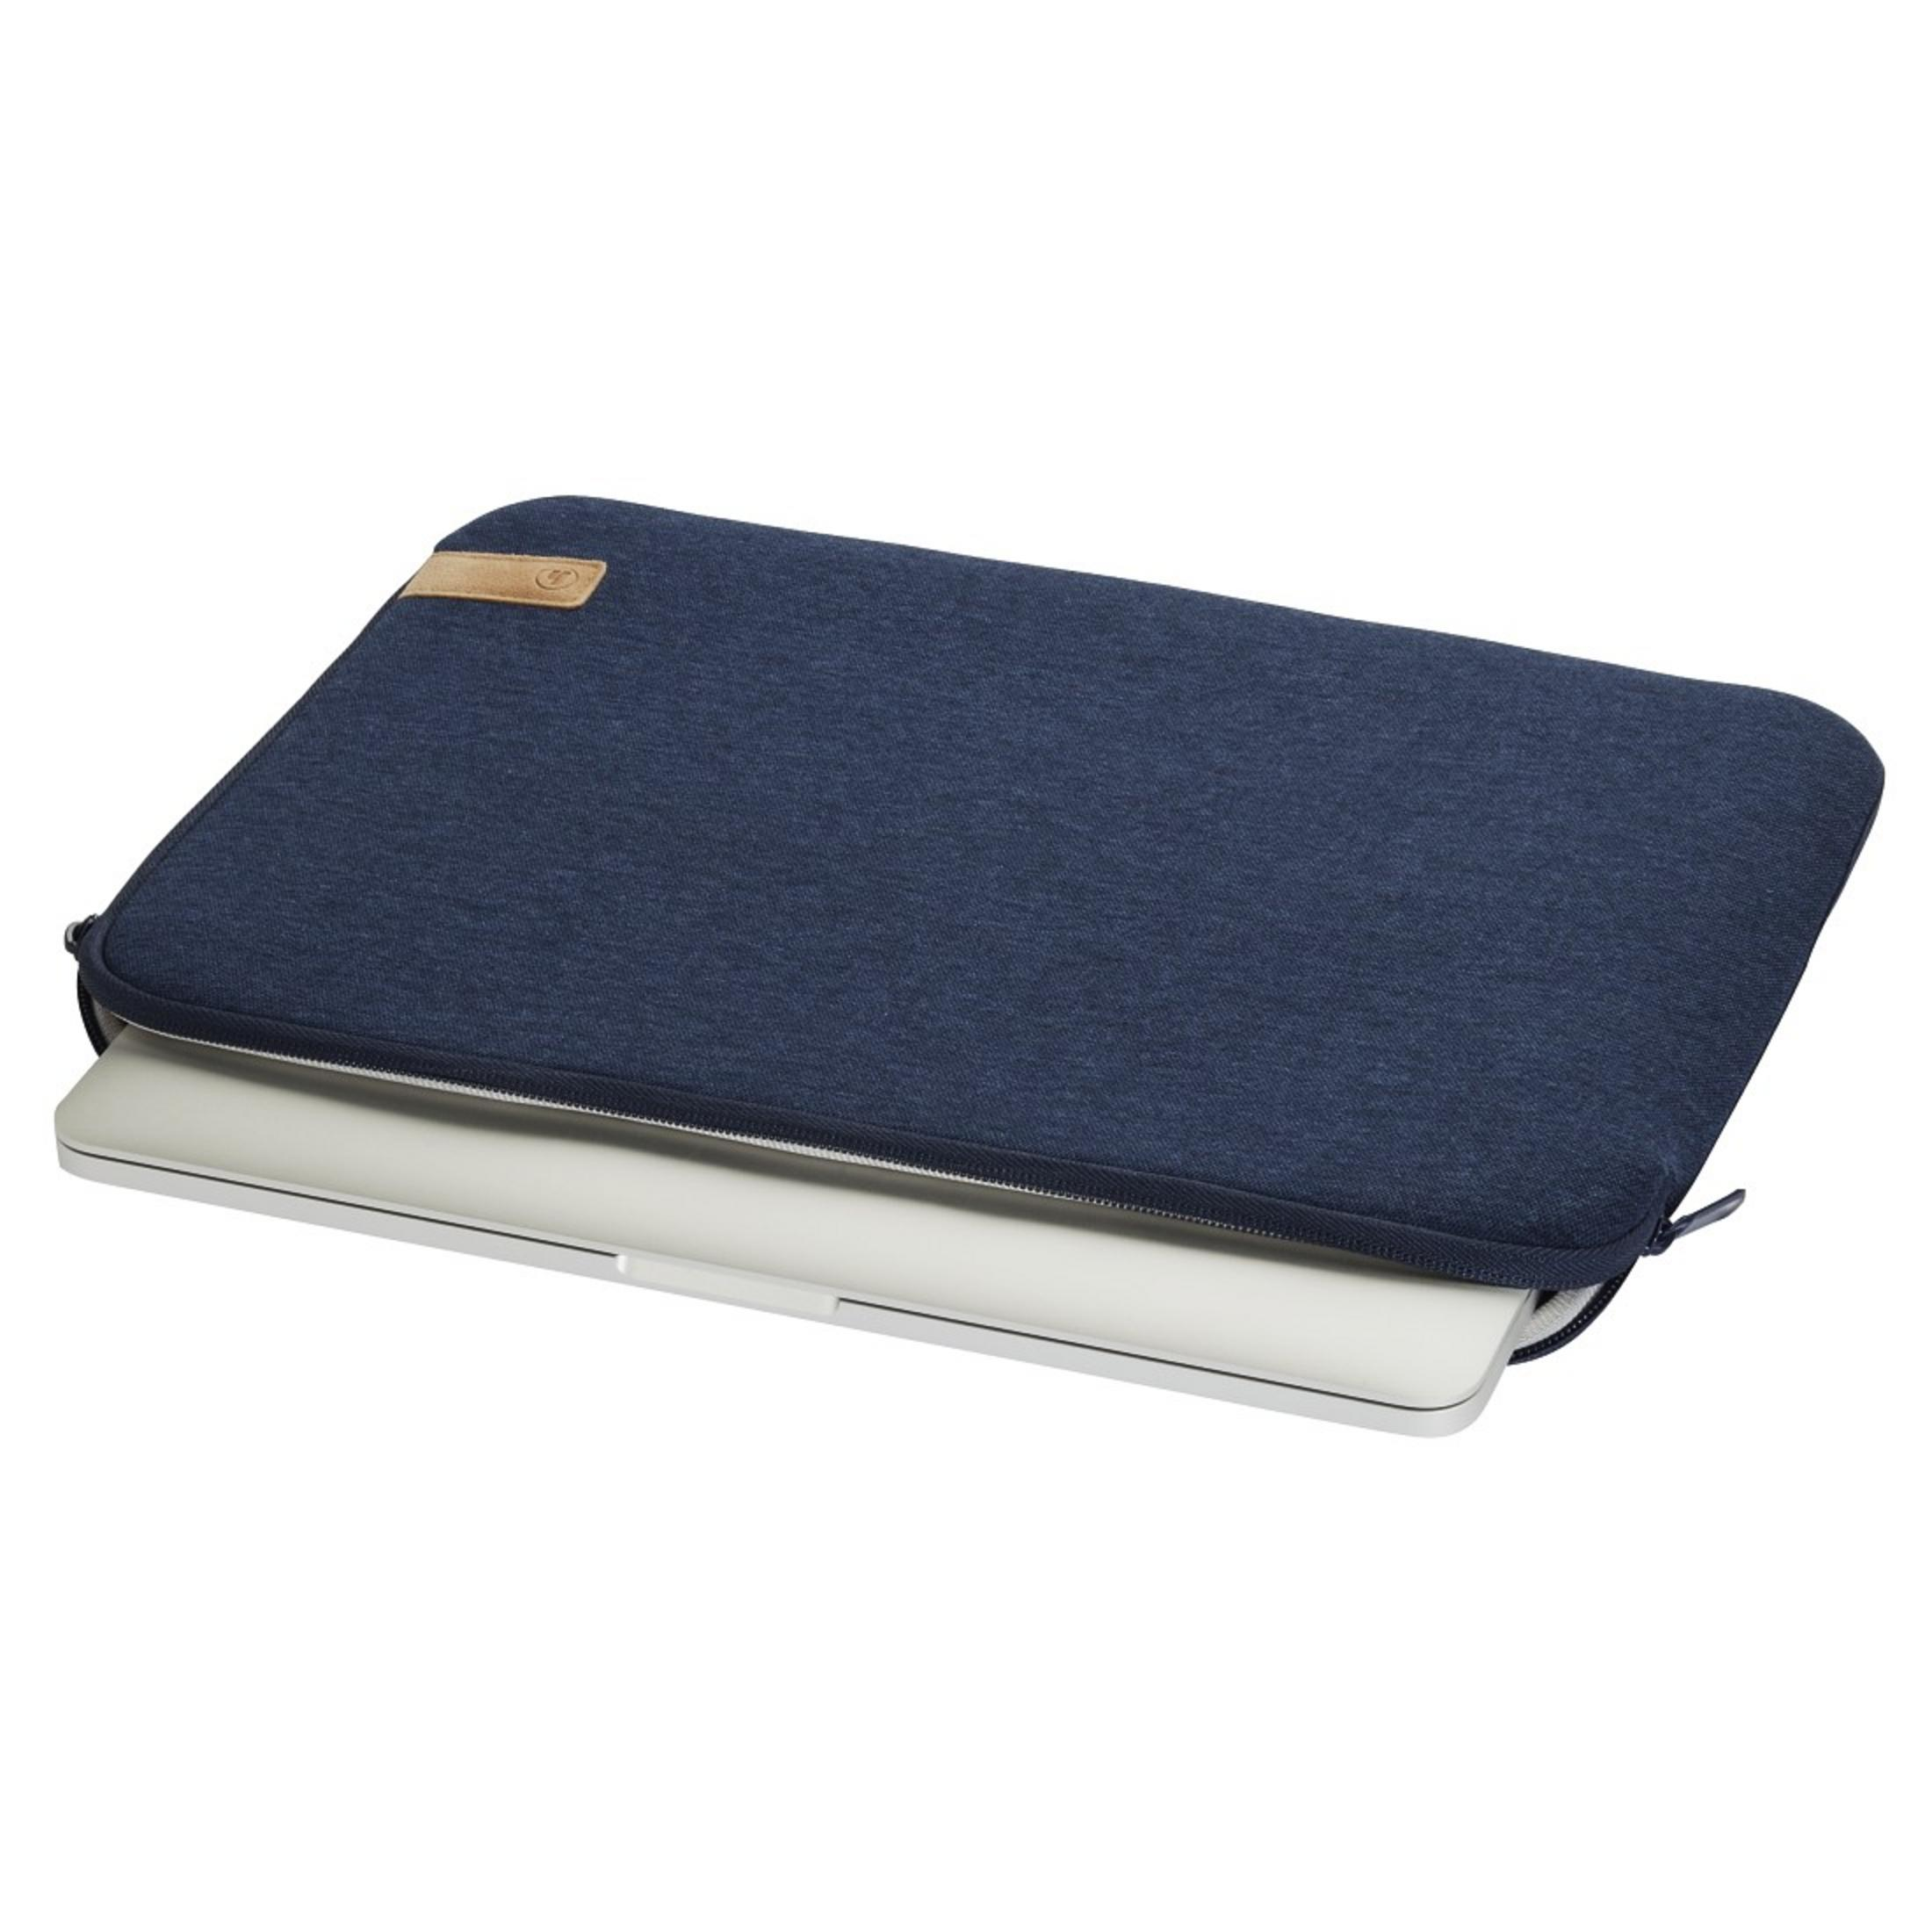 HAMA 101811 NB-SLE JERSEY 15.6 Universal Sleeve BLAU für Notebooktasche Jersey, Blau